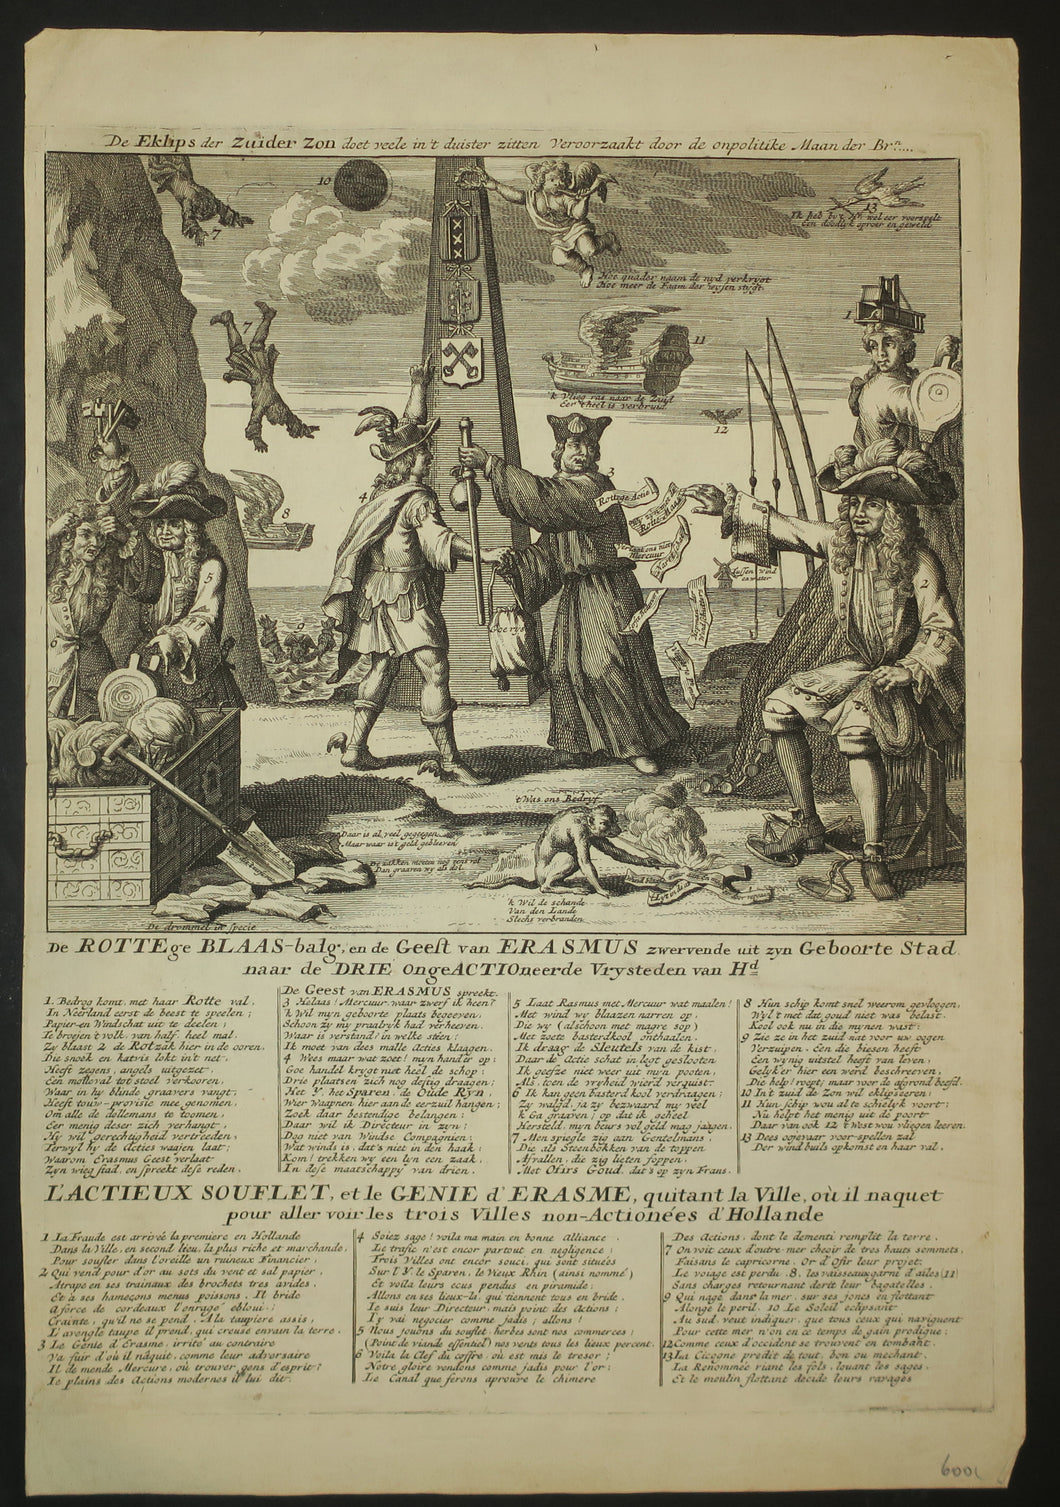 L'Actieux souflet et le Génie d'Erasme quitant la ville où il naquet pour aller voir les trois villes non actionées d'Hollande .  c.1720.